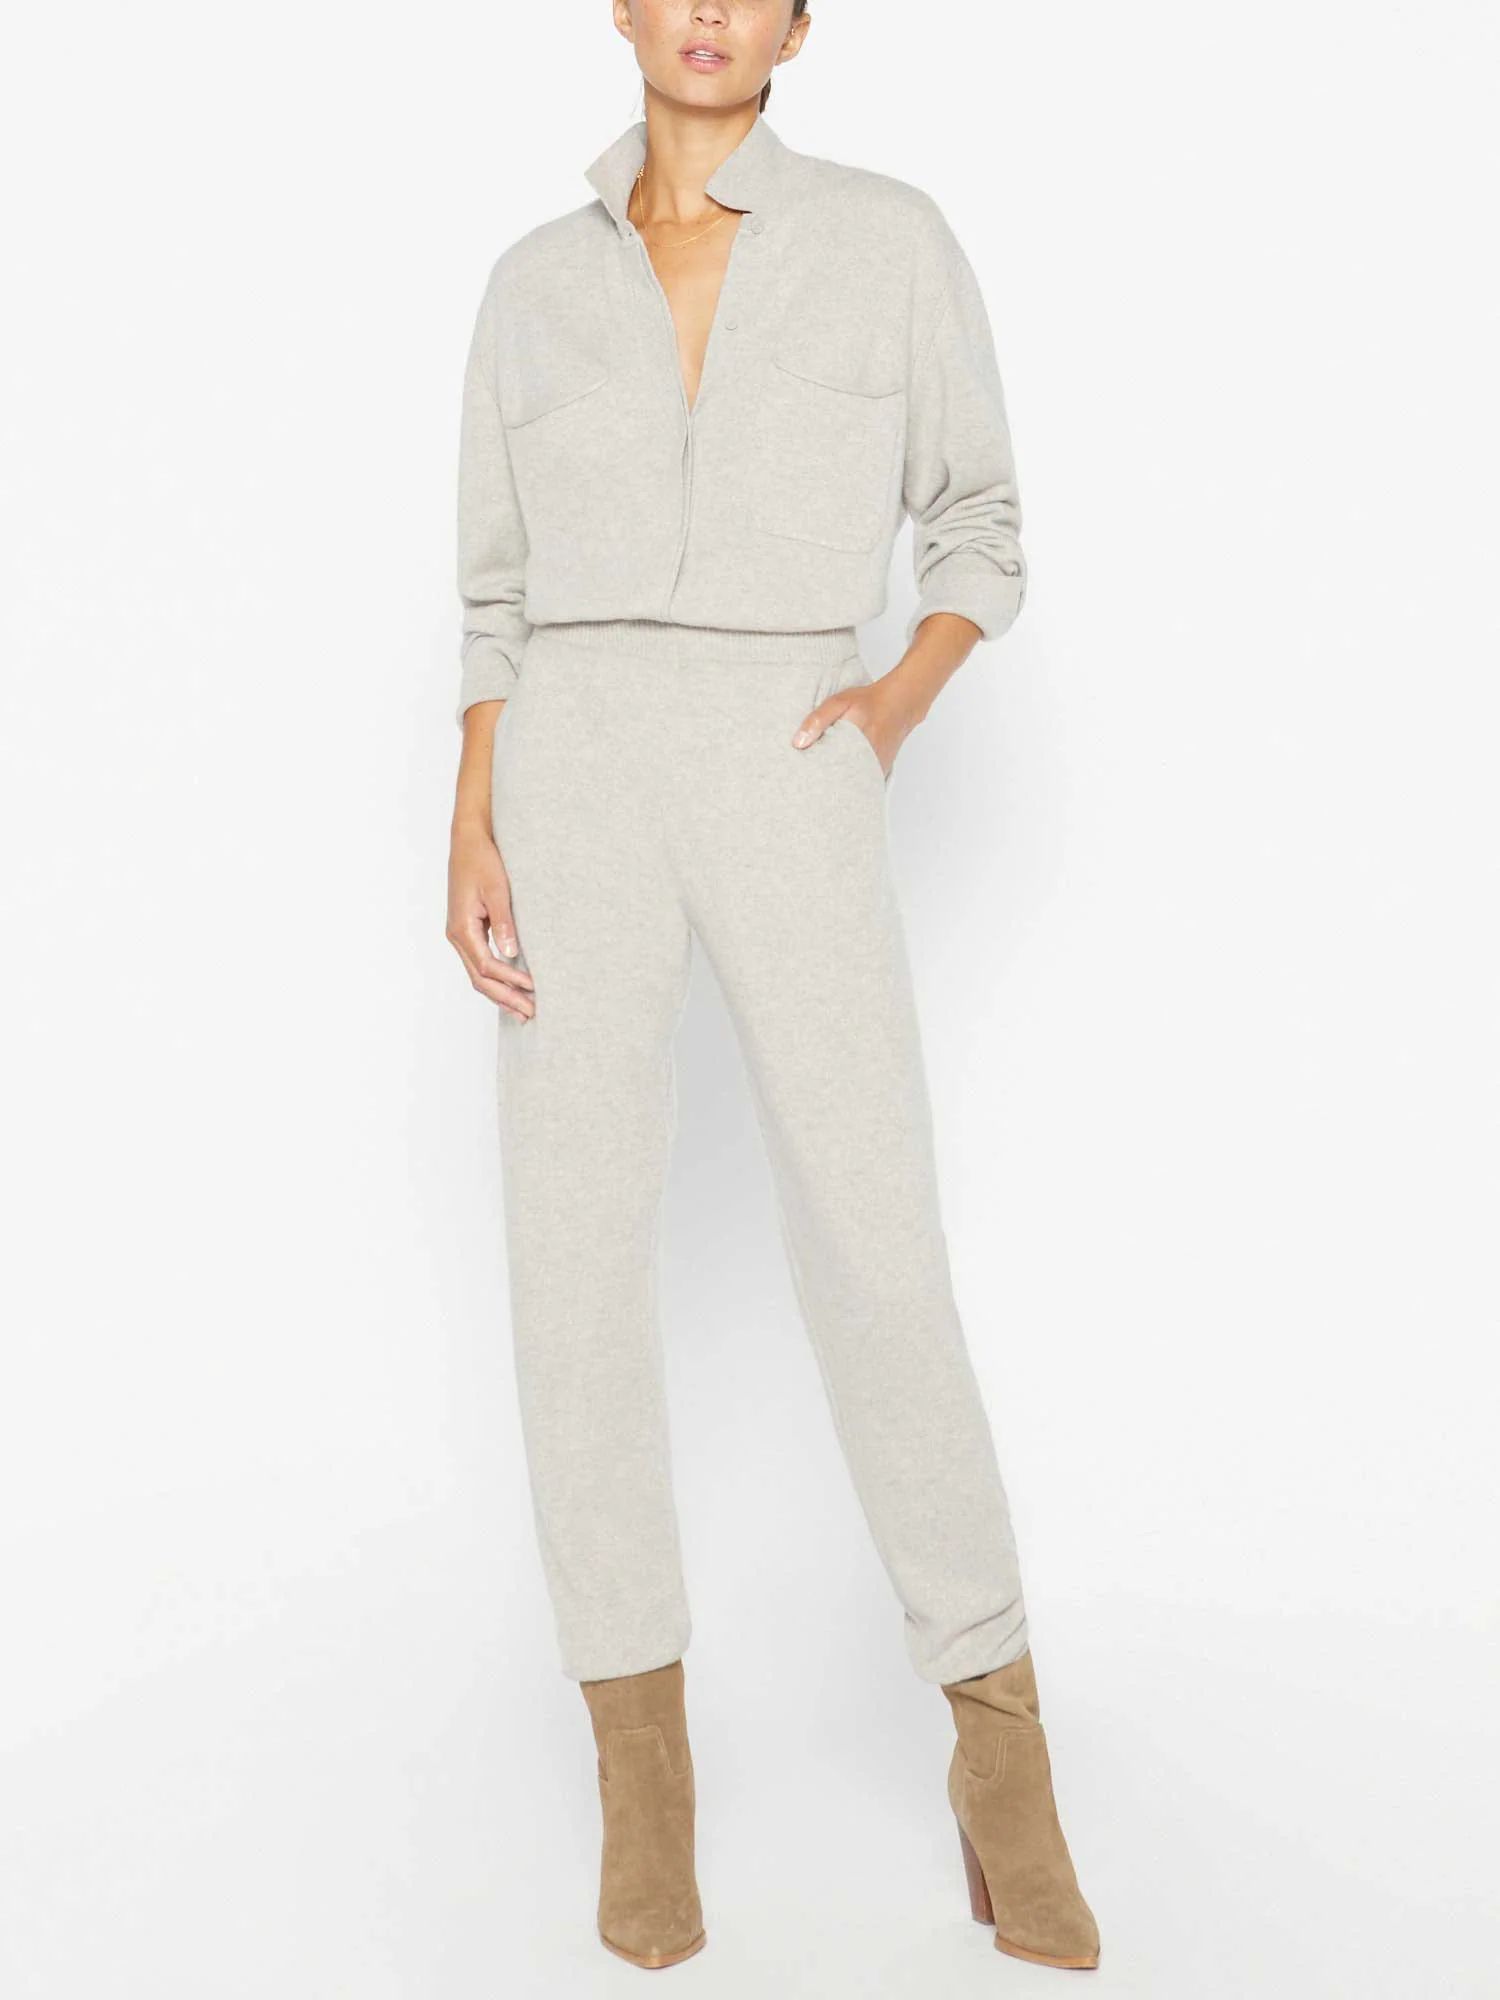 Brochu Walker Women's Andre Luxe Cashmere Pajama Set, Loungewear, Beige | Brochu Walker